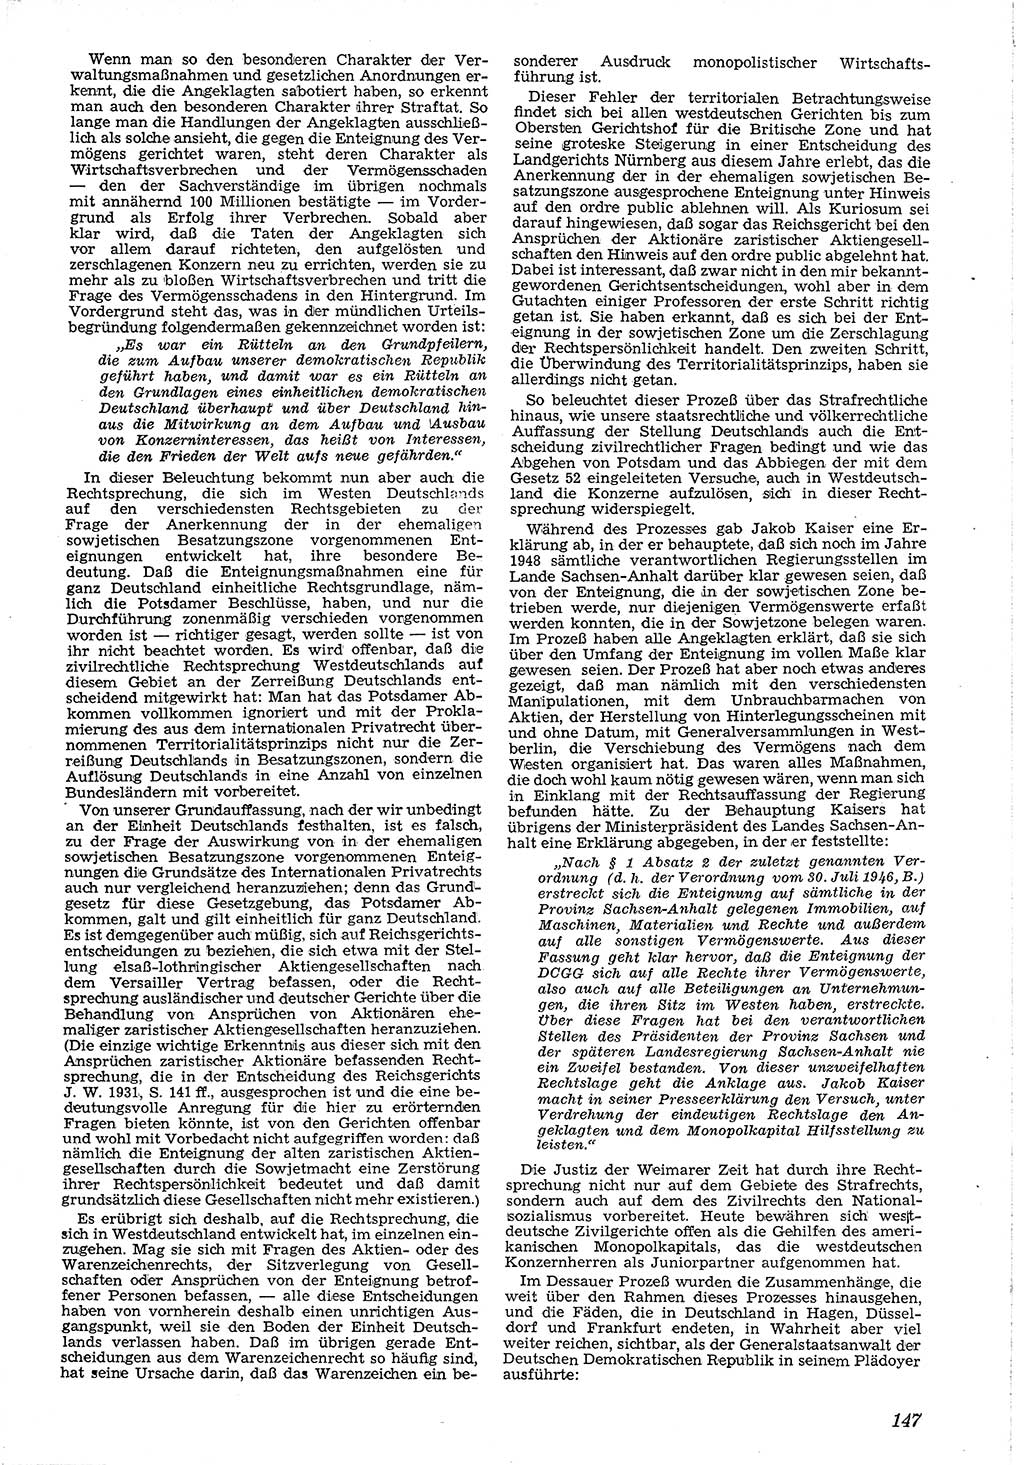 Neue Justiz (NJ), Zeitschrift für Recht und Rechtswissenschaft [Deutsche Demokratische Republik (DDR)], 4. Jahrgang 1950, Seite 147 (NJ DDR 1950, S. 147)